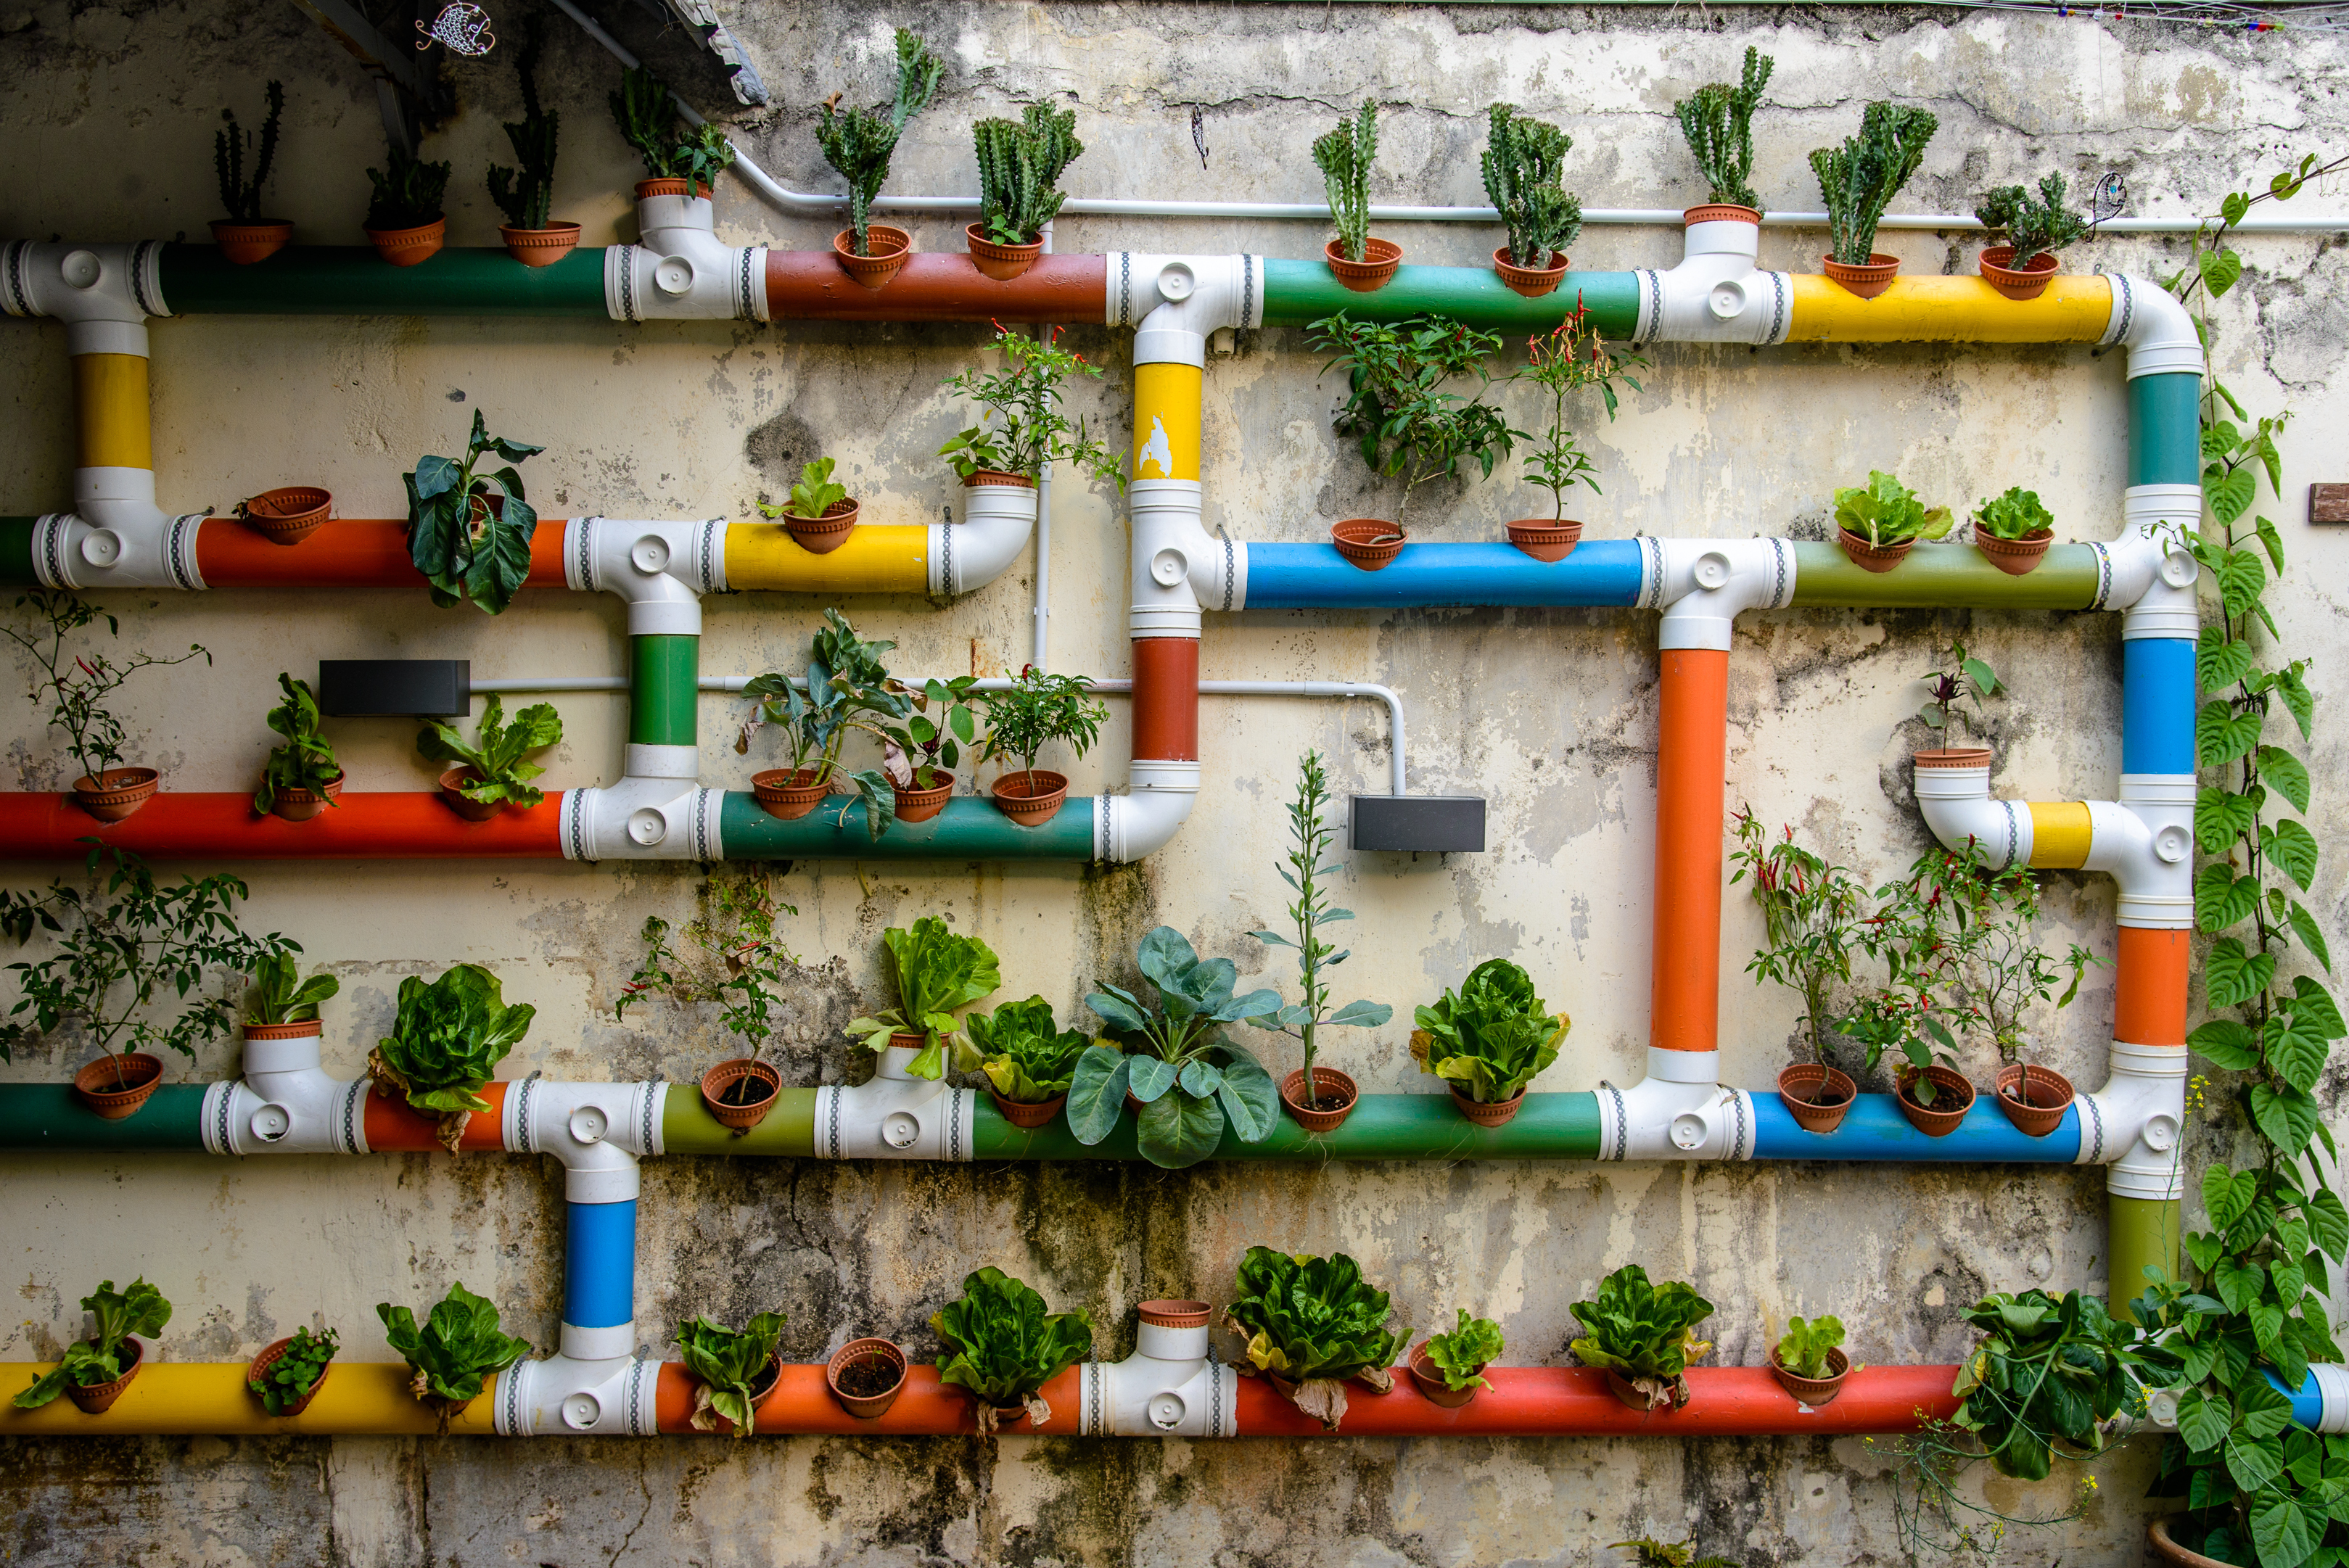 interesante y creativa forma de realizar un jardín vertical